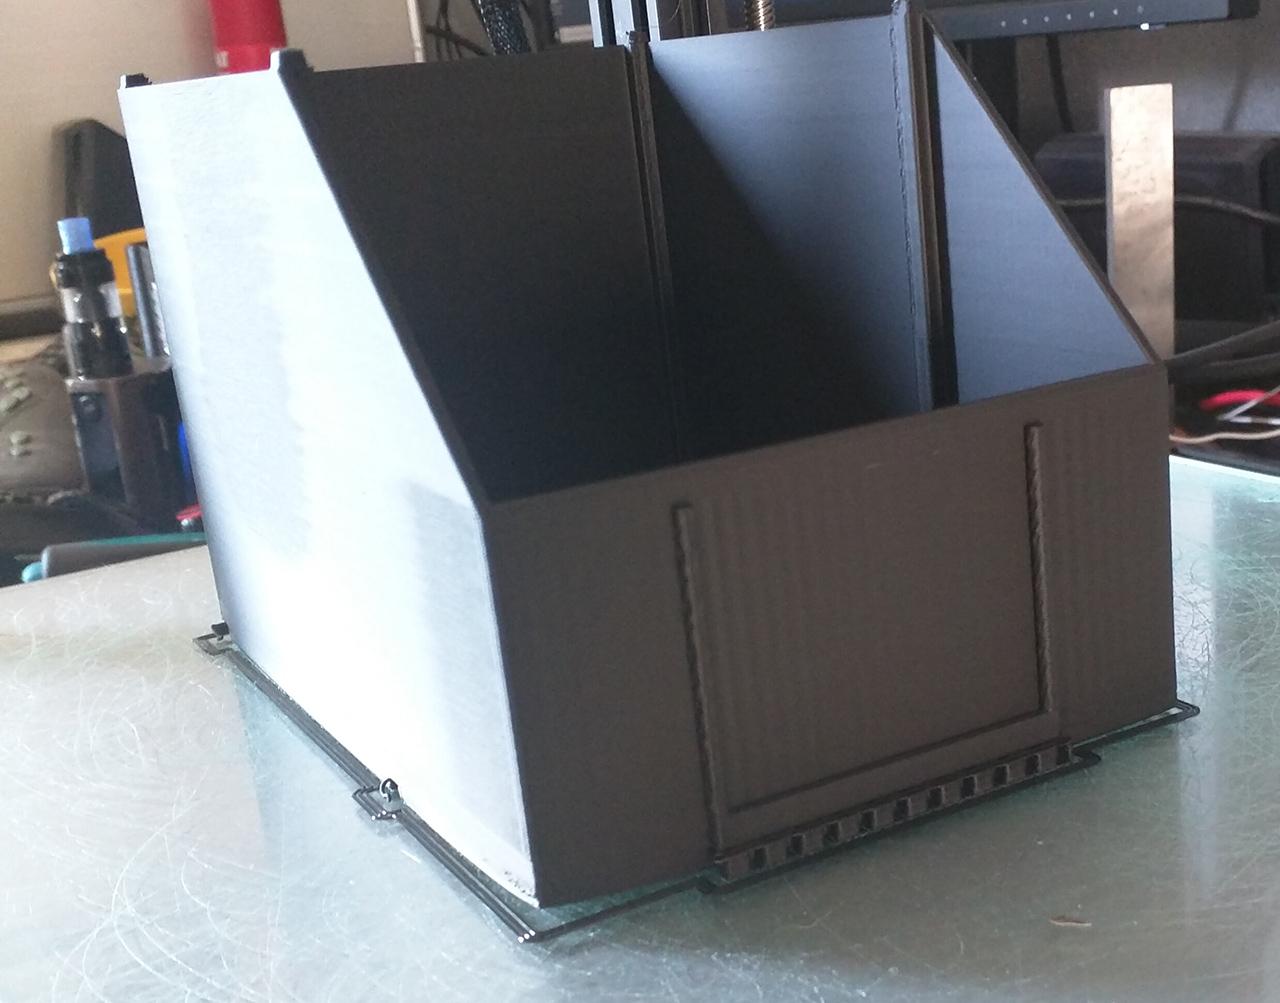 Dyze Design lance une buse d'imprimante 3D en carbure de tungstène